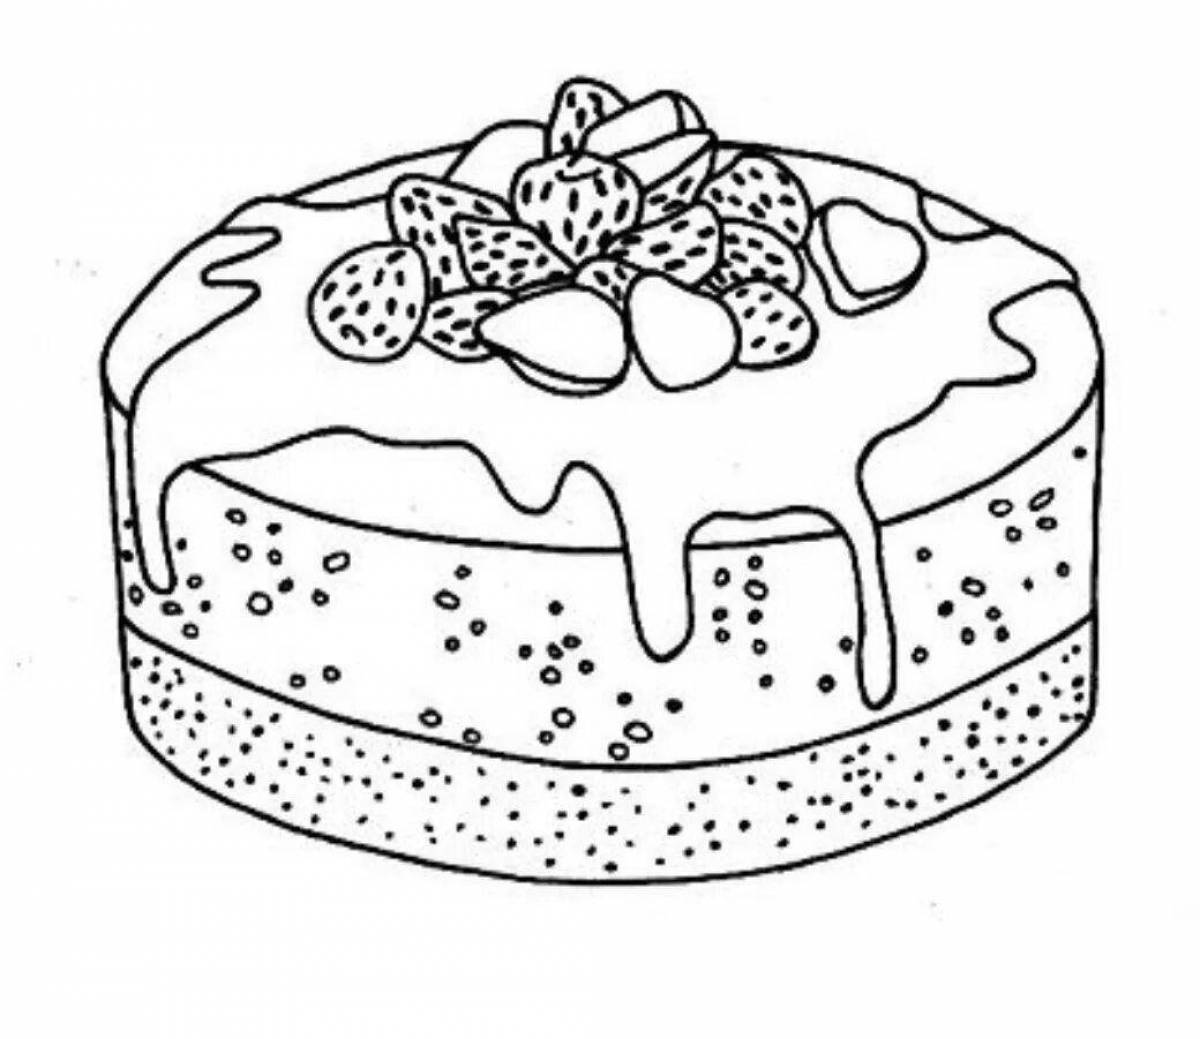 Увлекательная раскраска пирога для детей